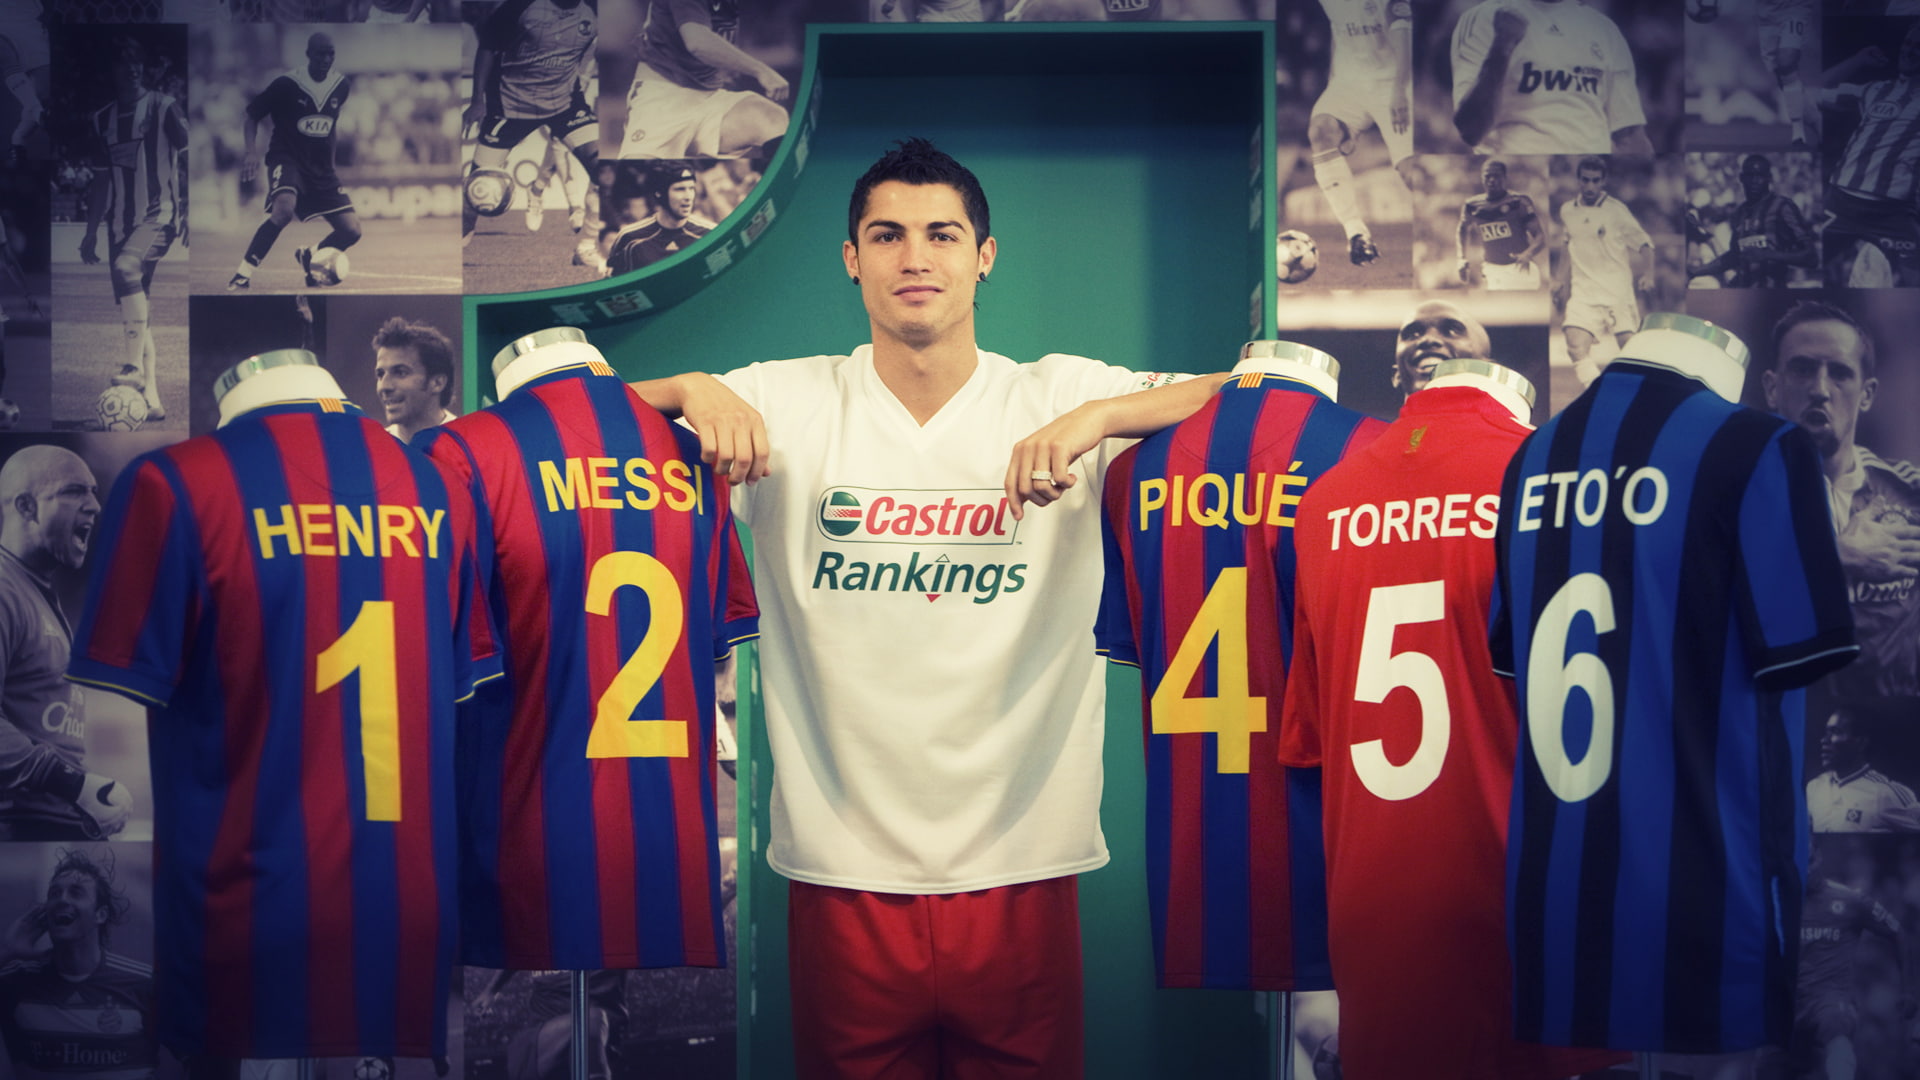 Ronaldo Messi, Henry, Pique